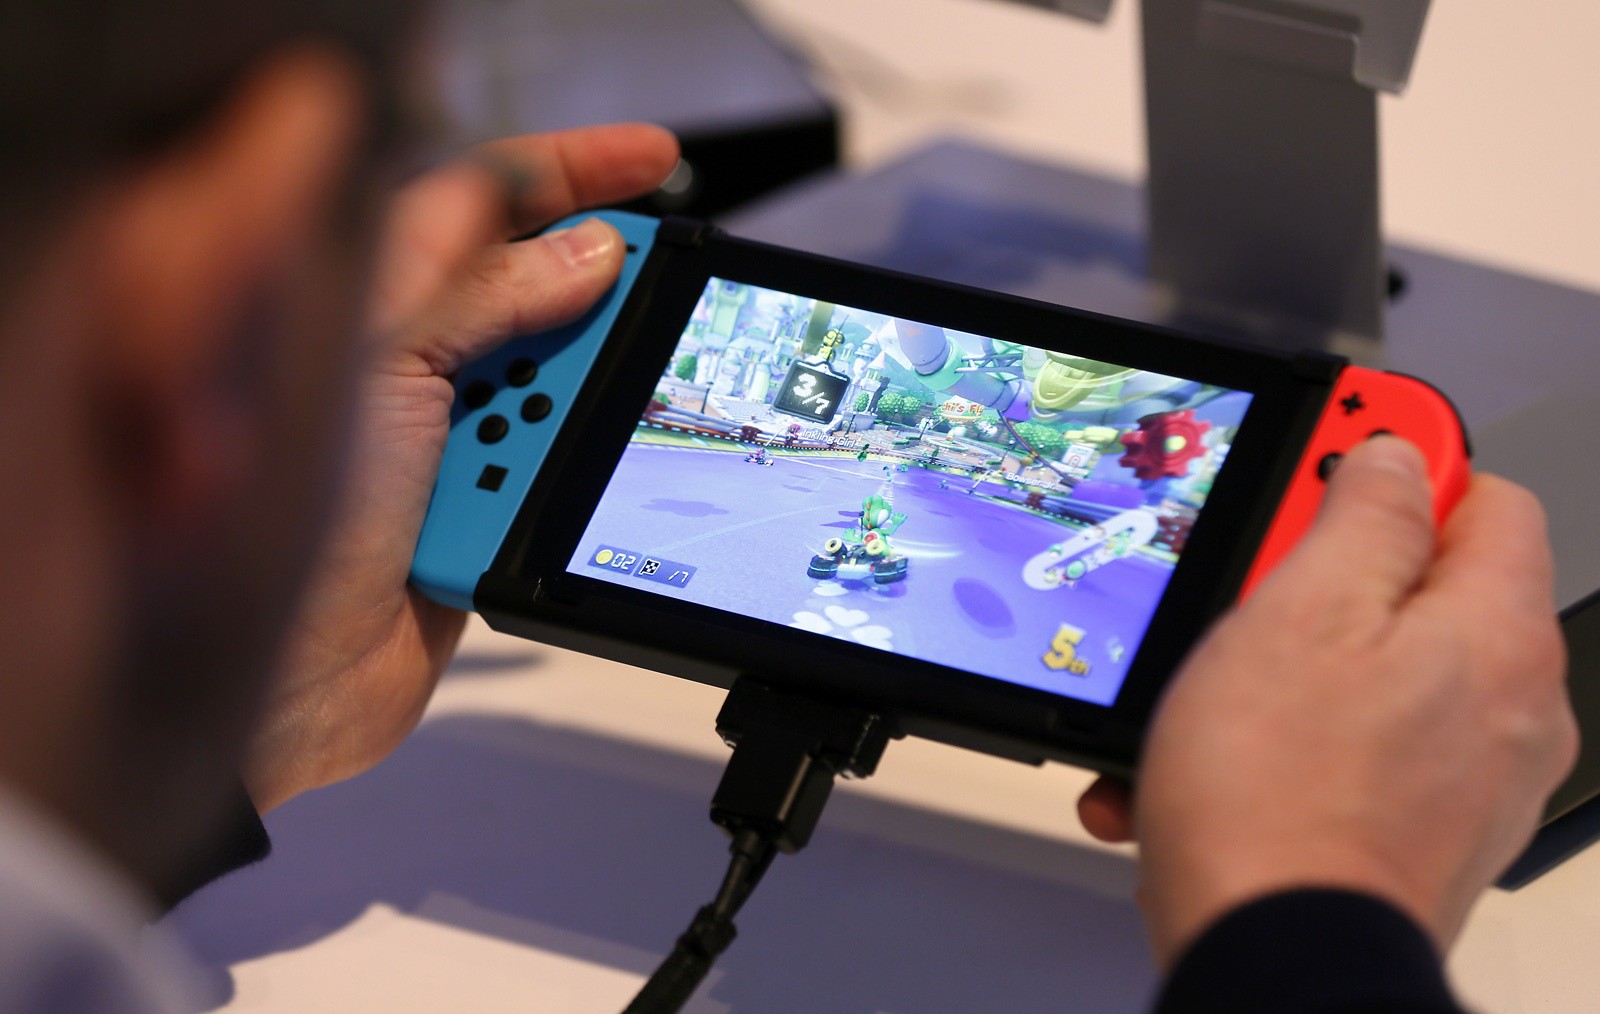 Emuladores de Nintendo Switch vão acabar, promete empresa